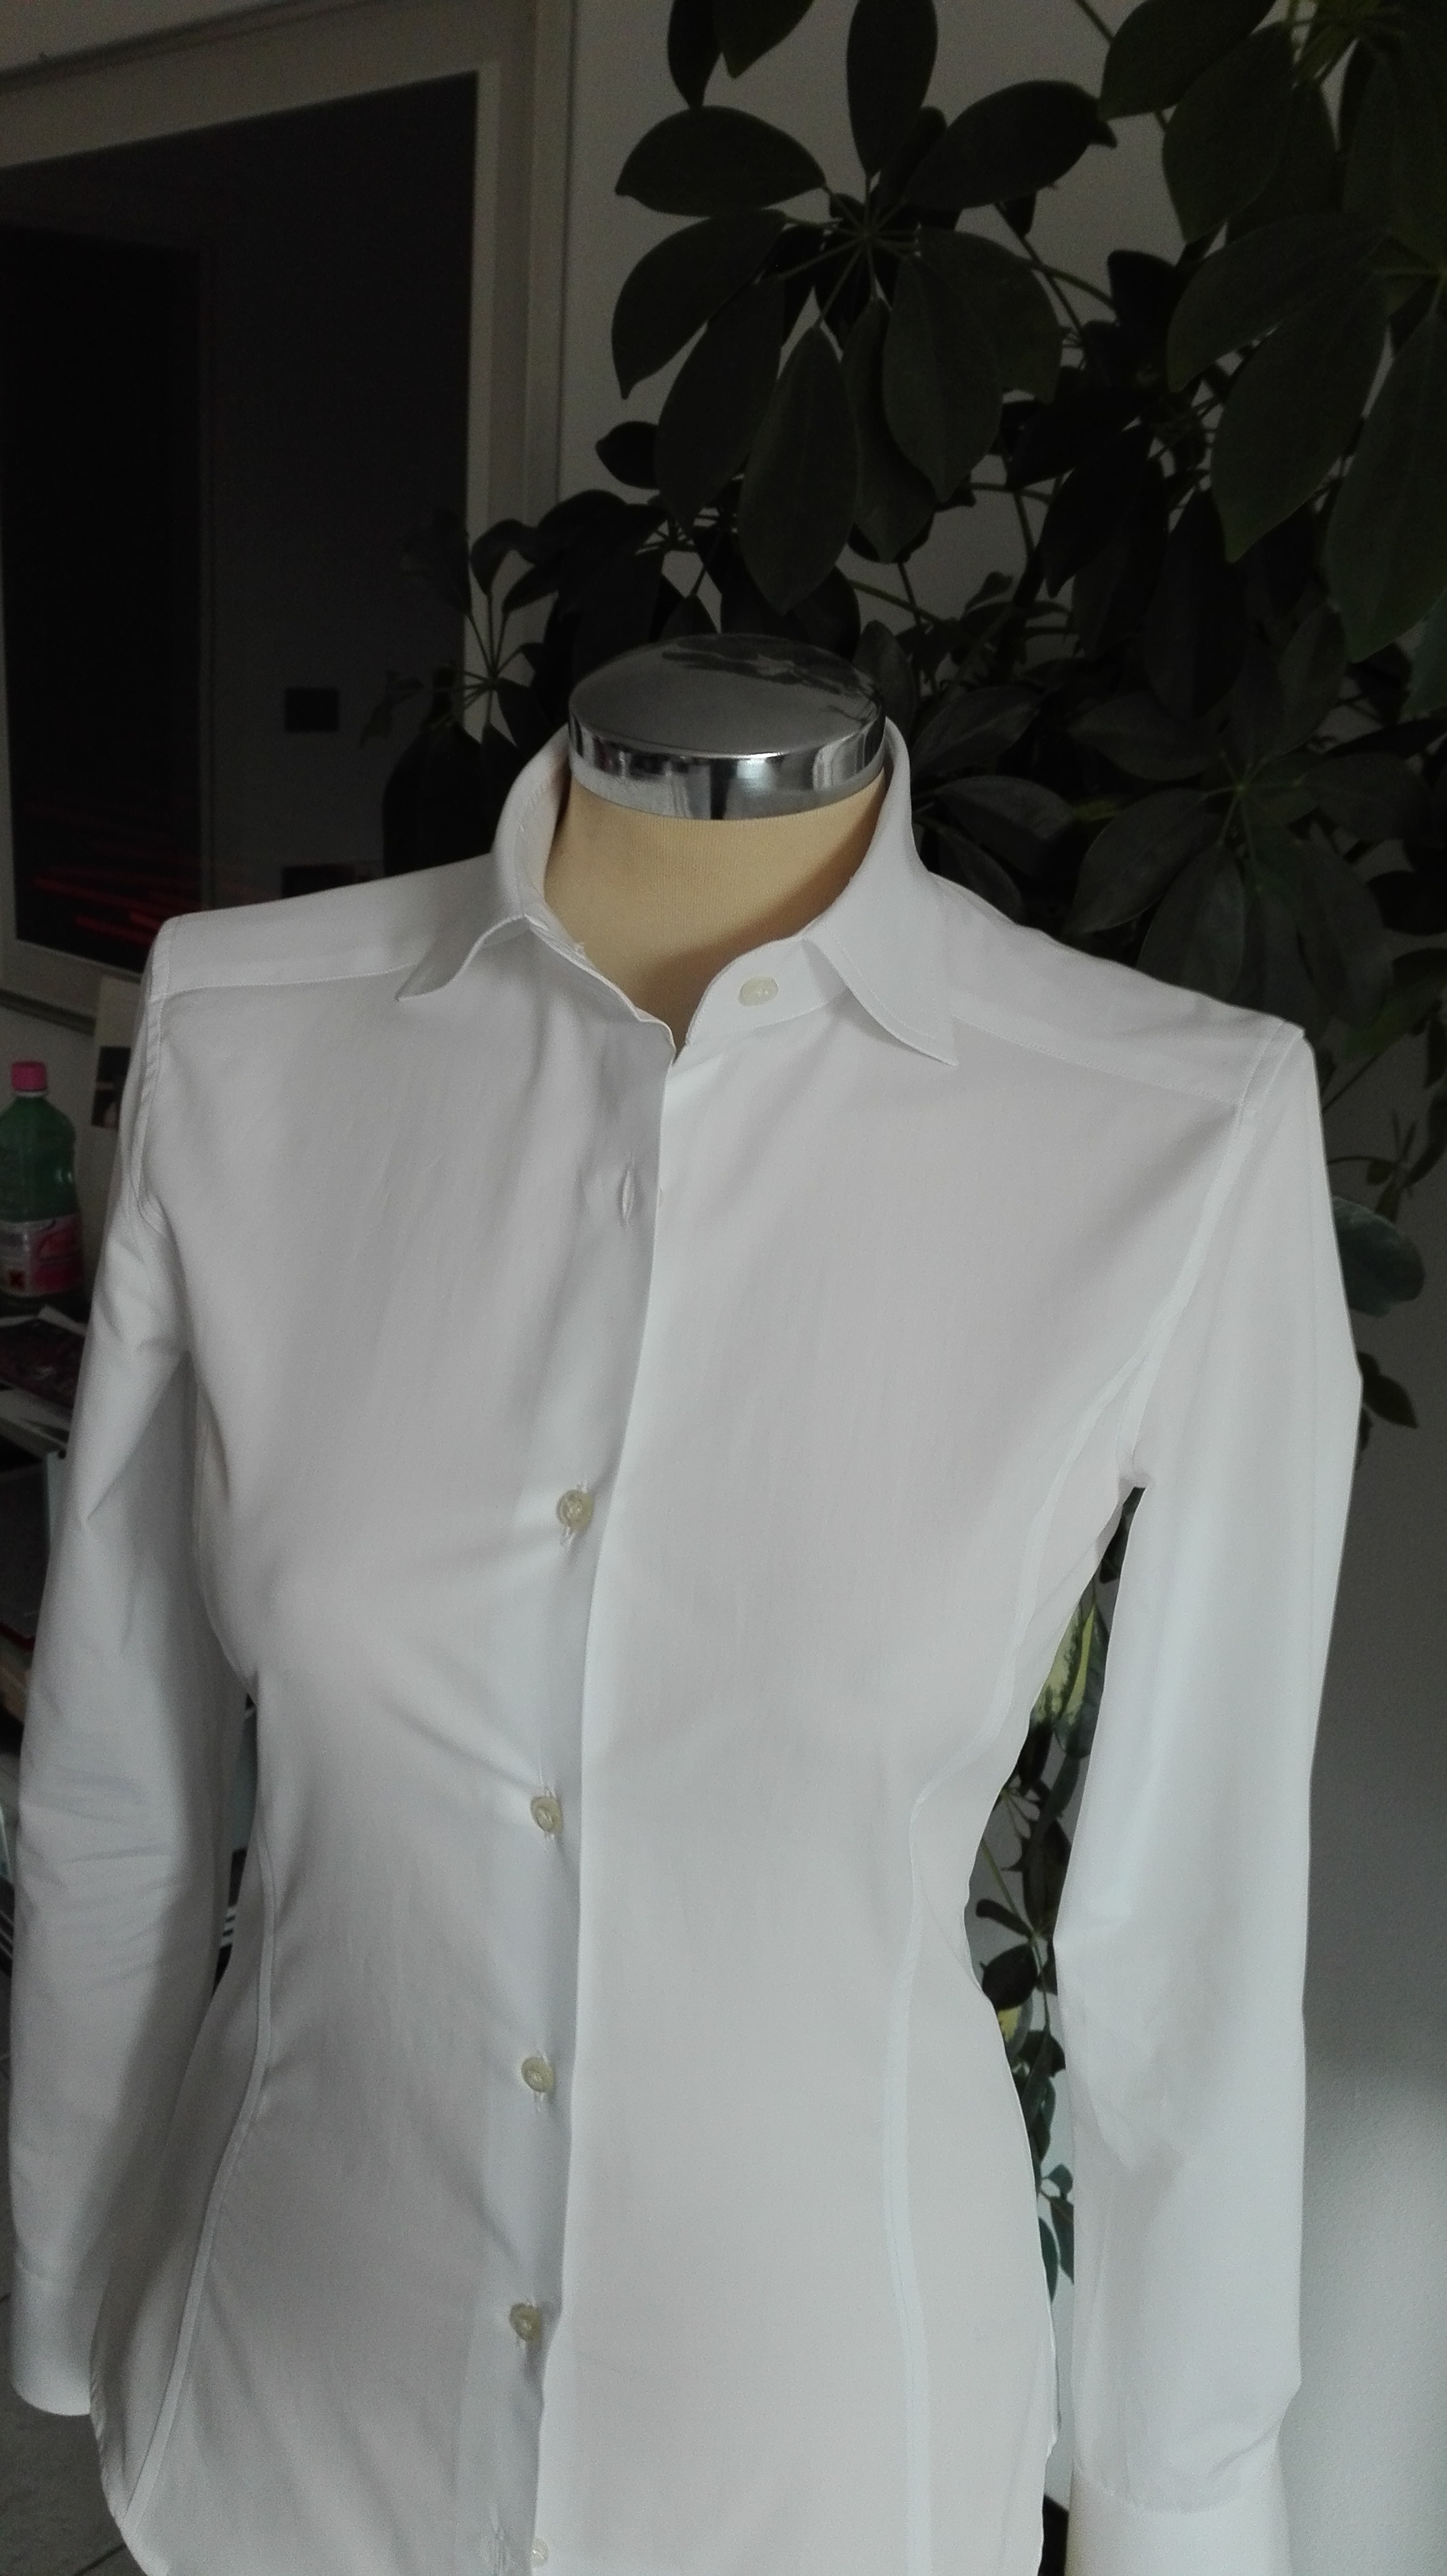  Camicia bianca DONNA doppio ritorto cot - Modello 101
Collo francese alto
Cucita e ribattuta completamente.

Taglie 38 40 42 44 46 48 50 e
